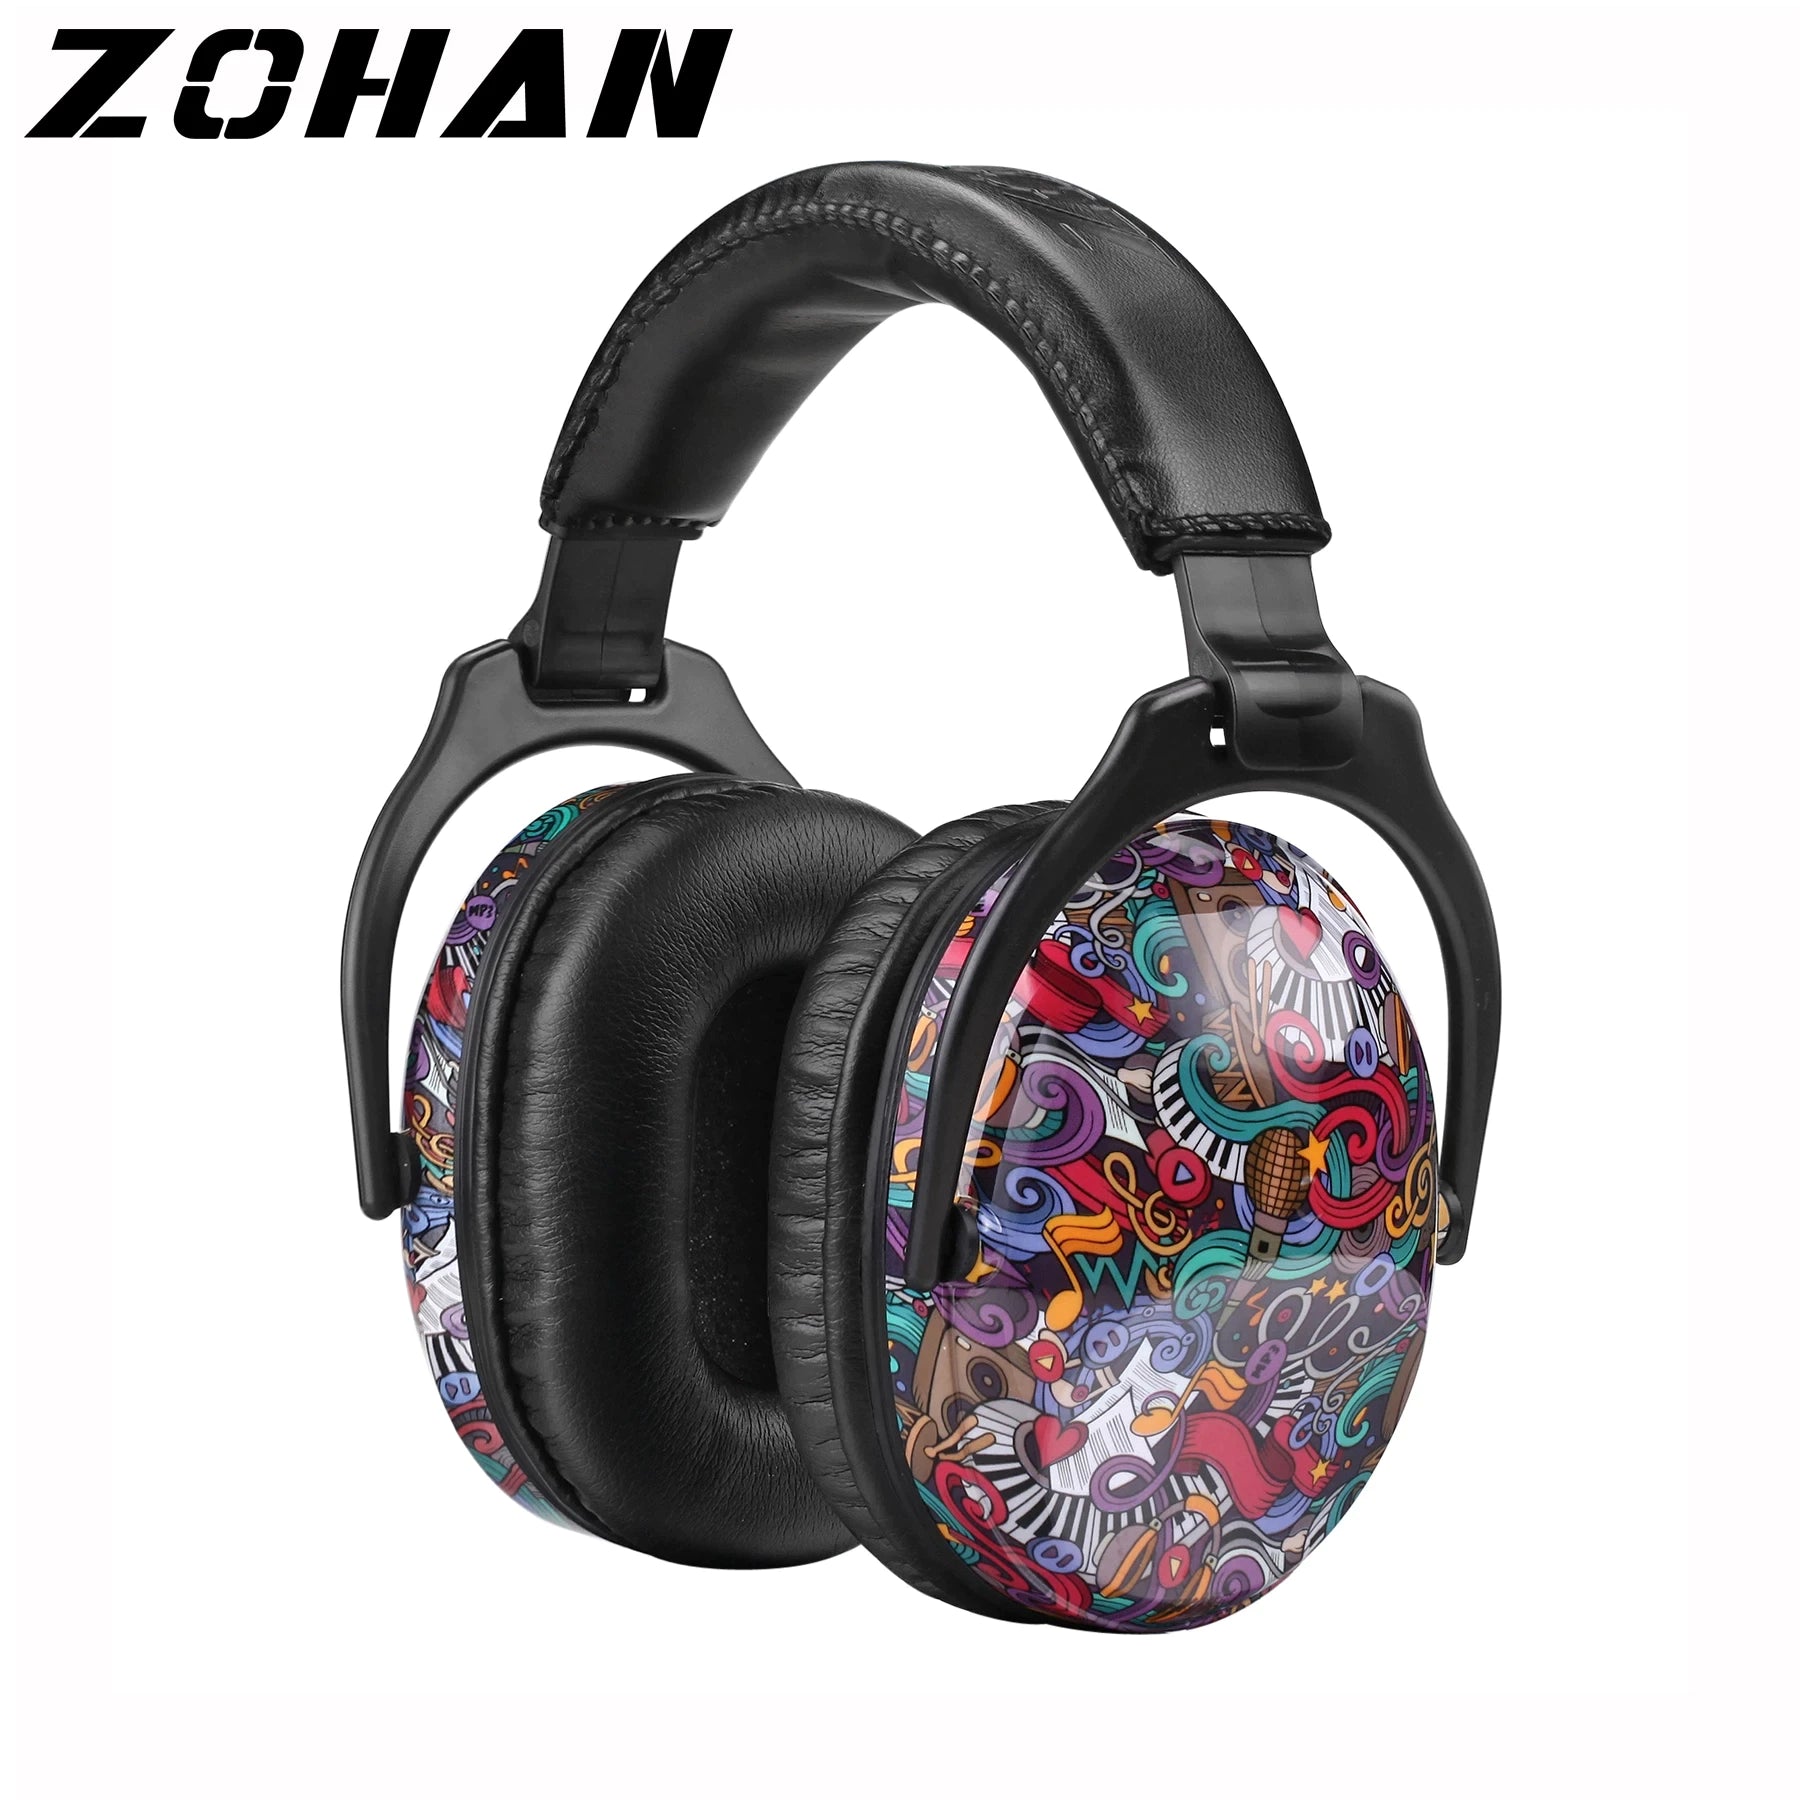 Zohan Noise Reducing Headphones